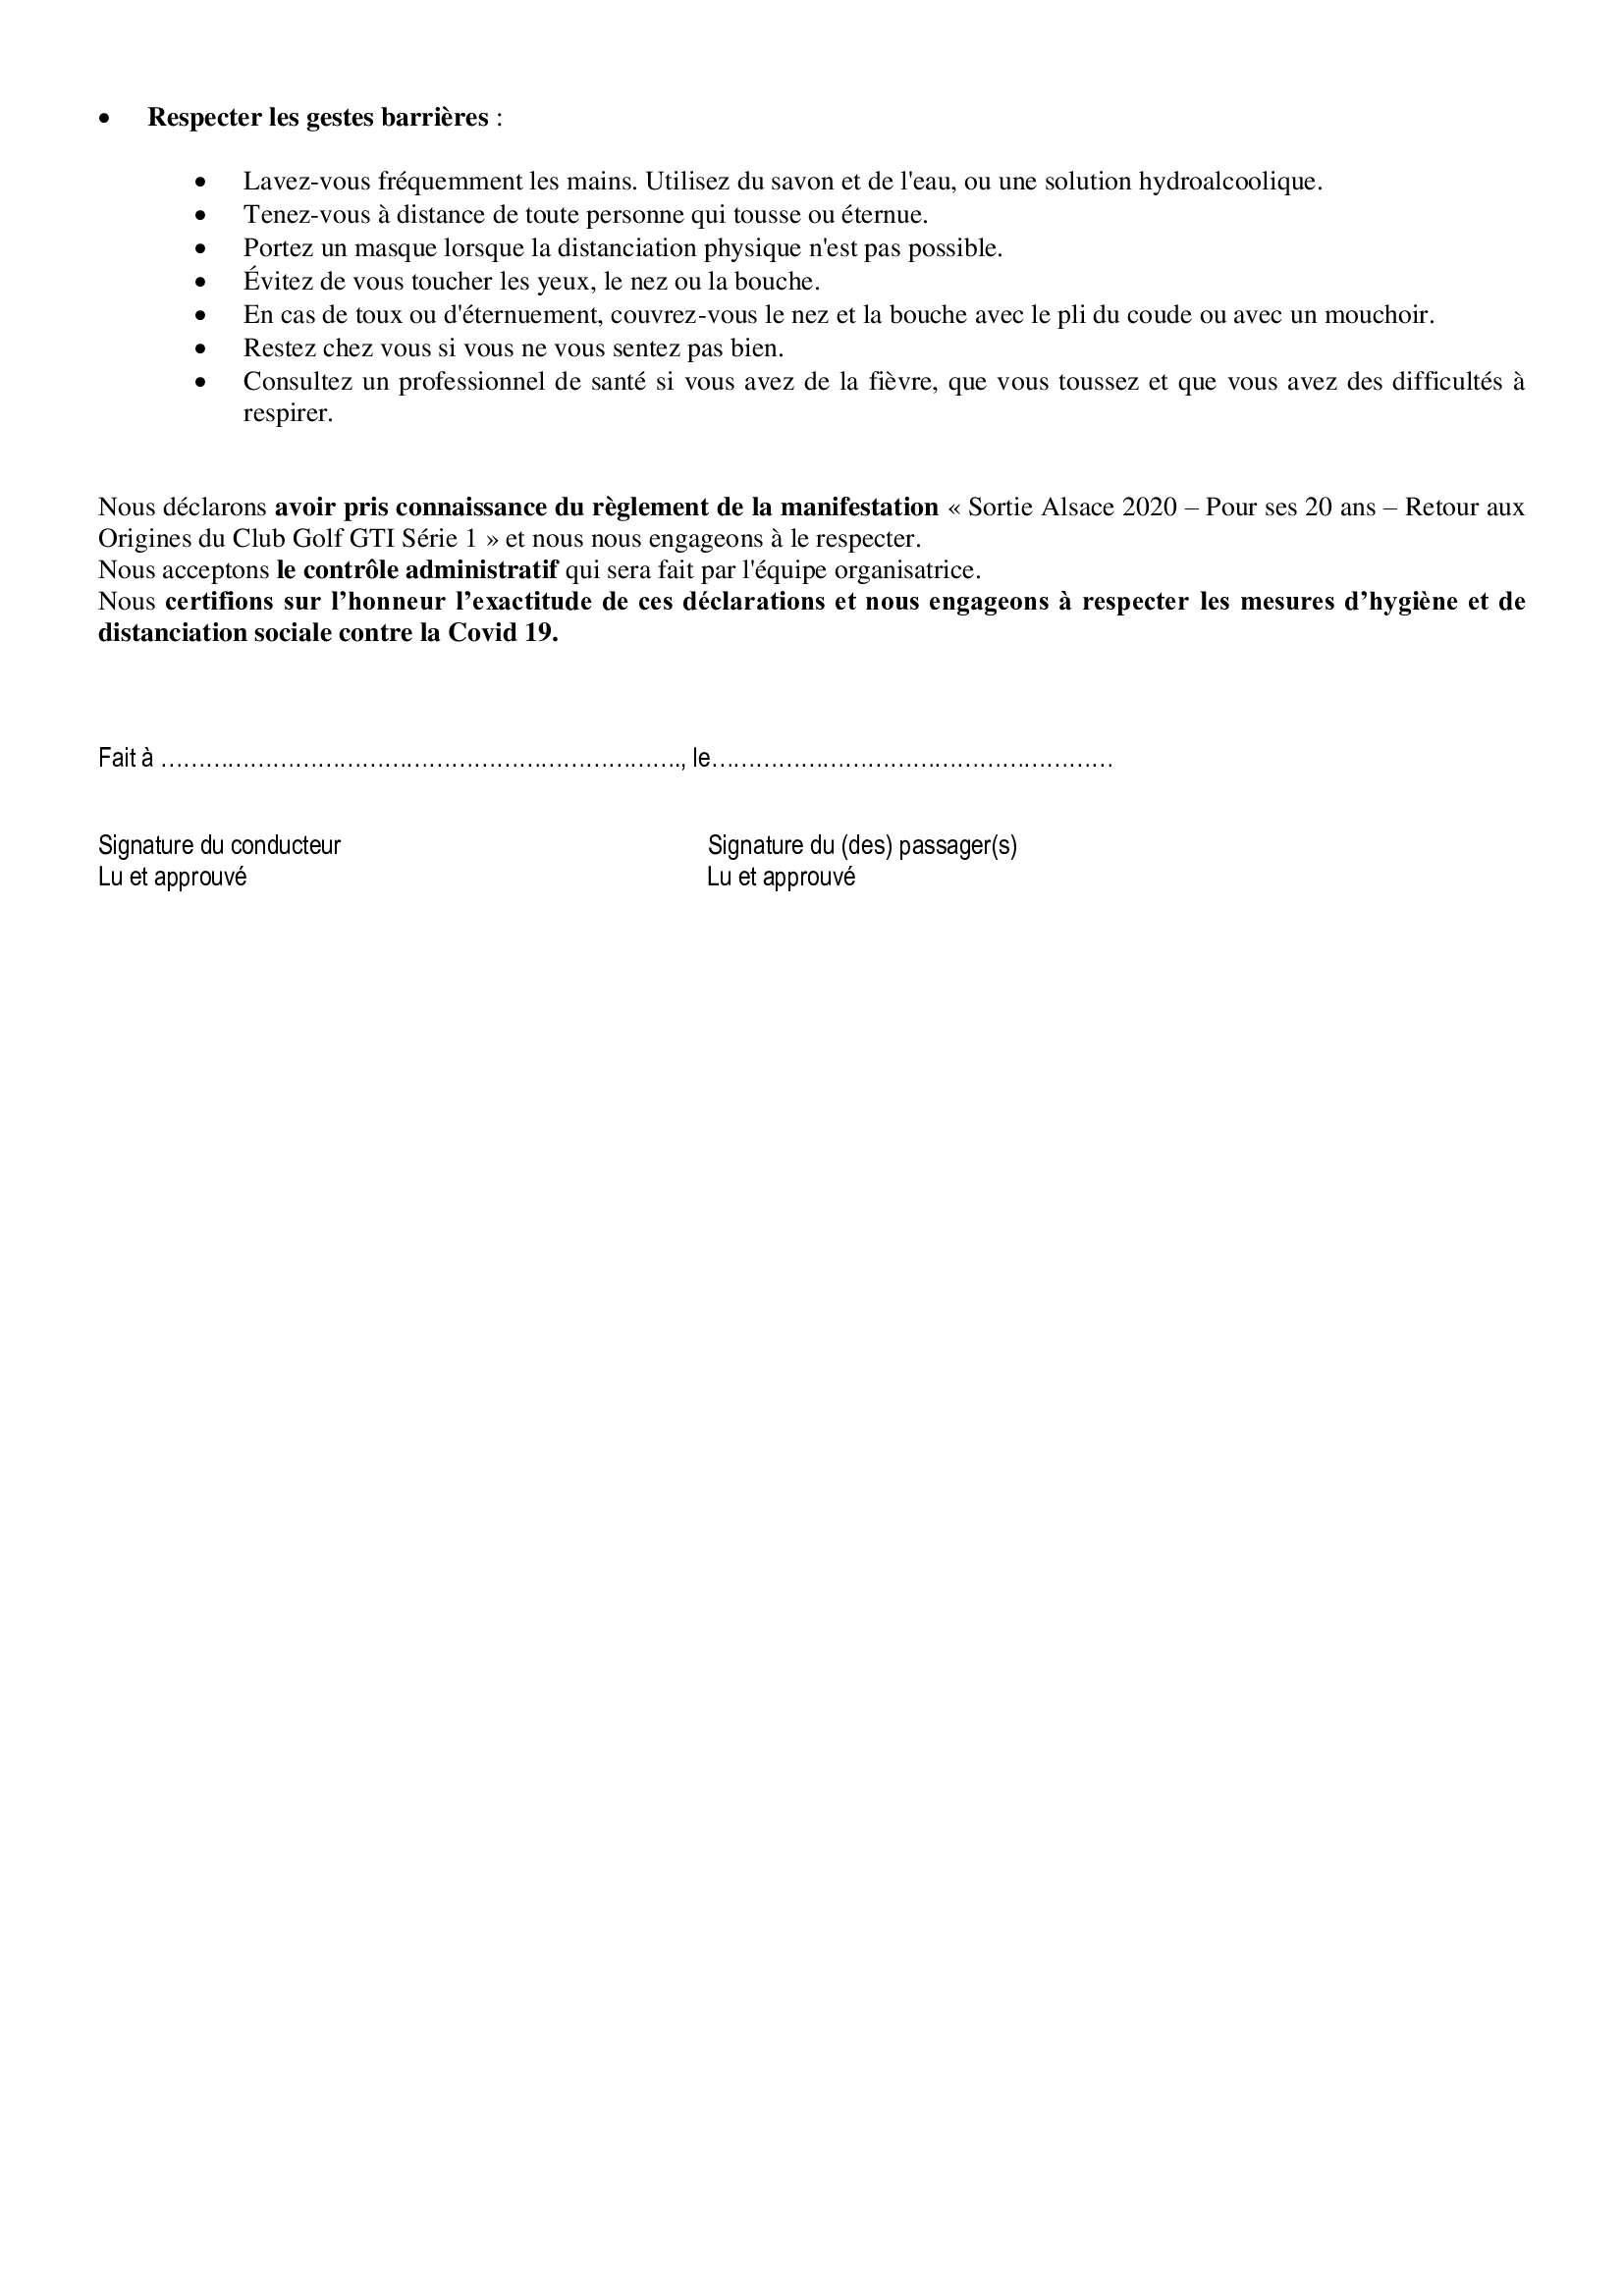 Sortie Alsace - 20ème Anniversaire du Club - 12/13 sept 2020 - Page 2 20073110261321506916944068